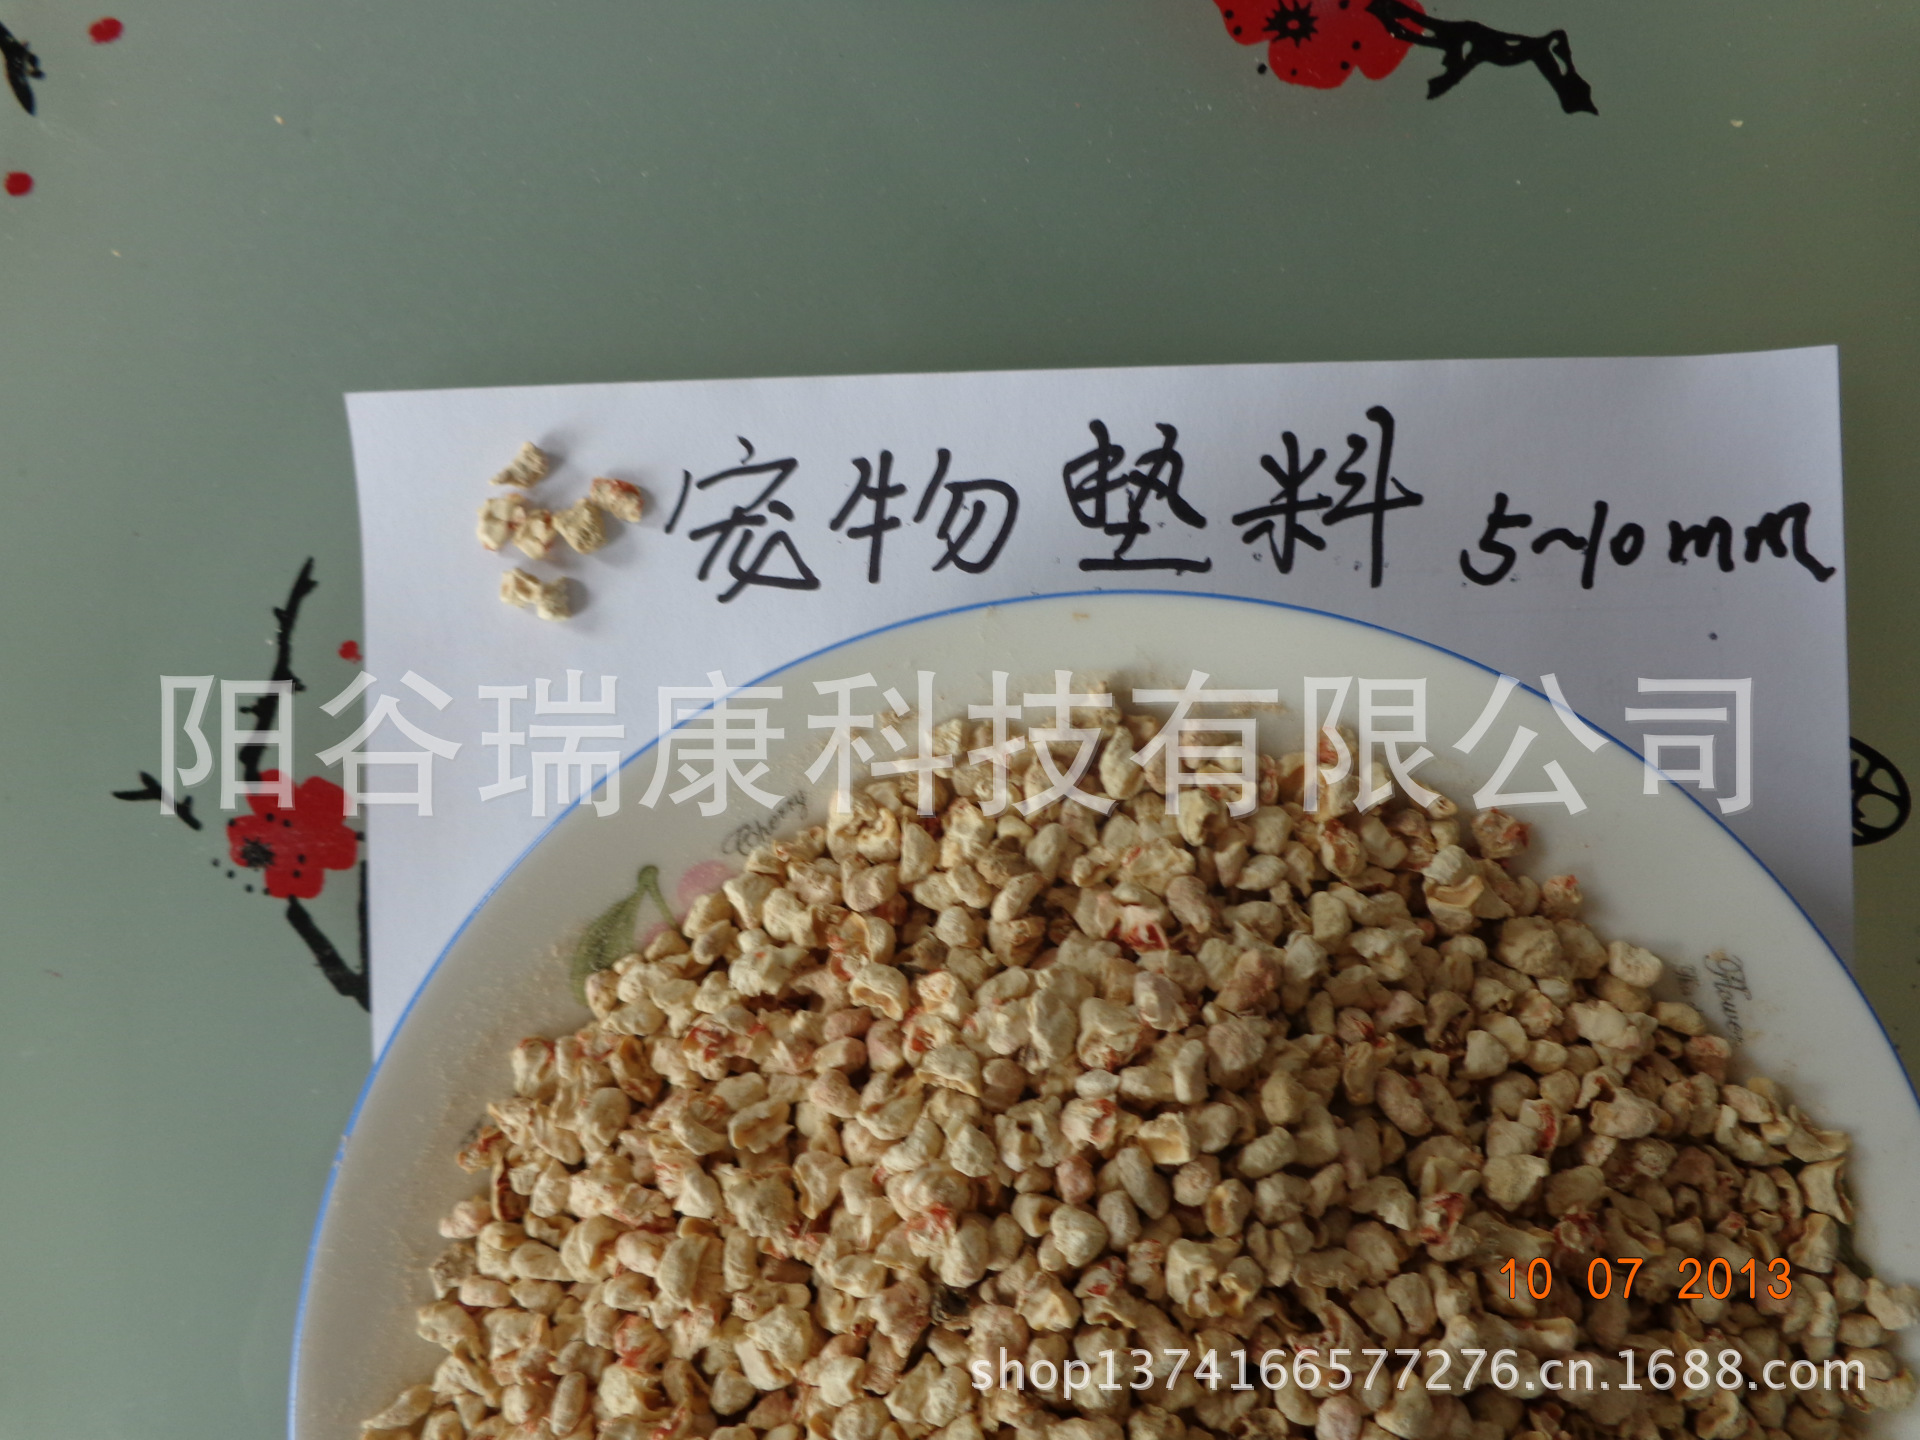 阳谷瑞康科技有限公司常年销售精加工生产宠物垫料玉米芯颗粒